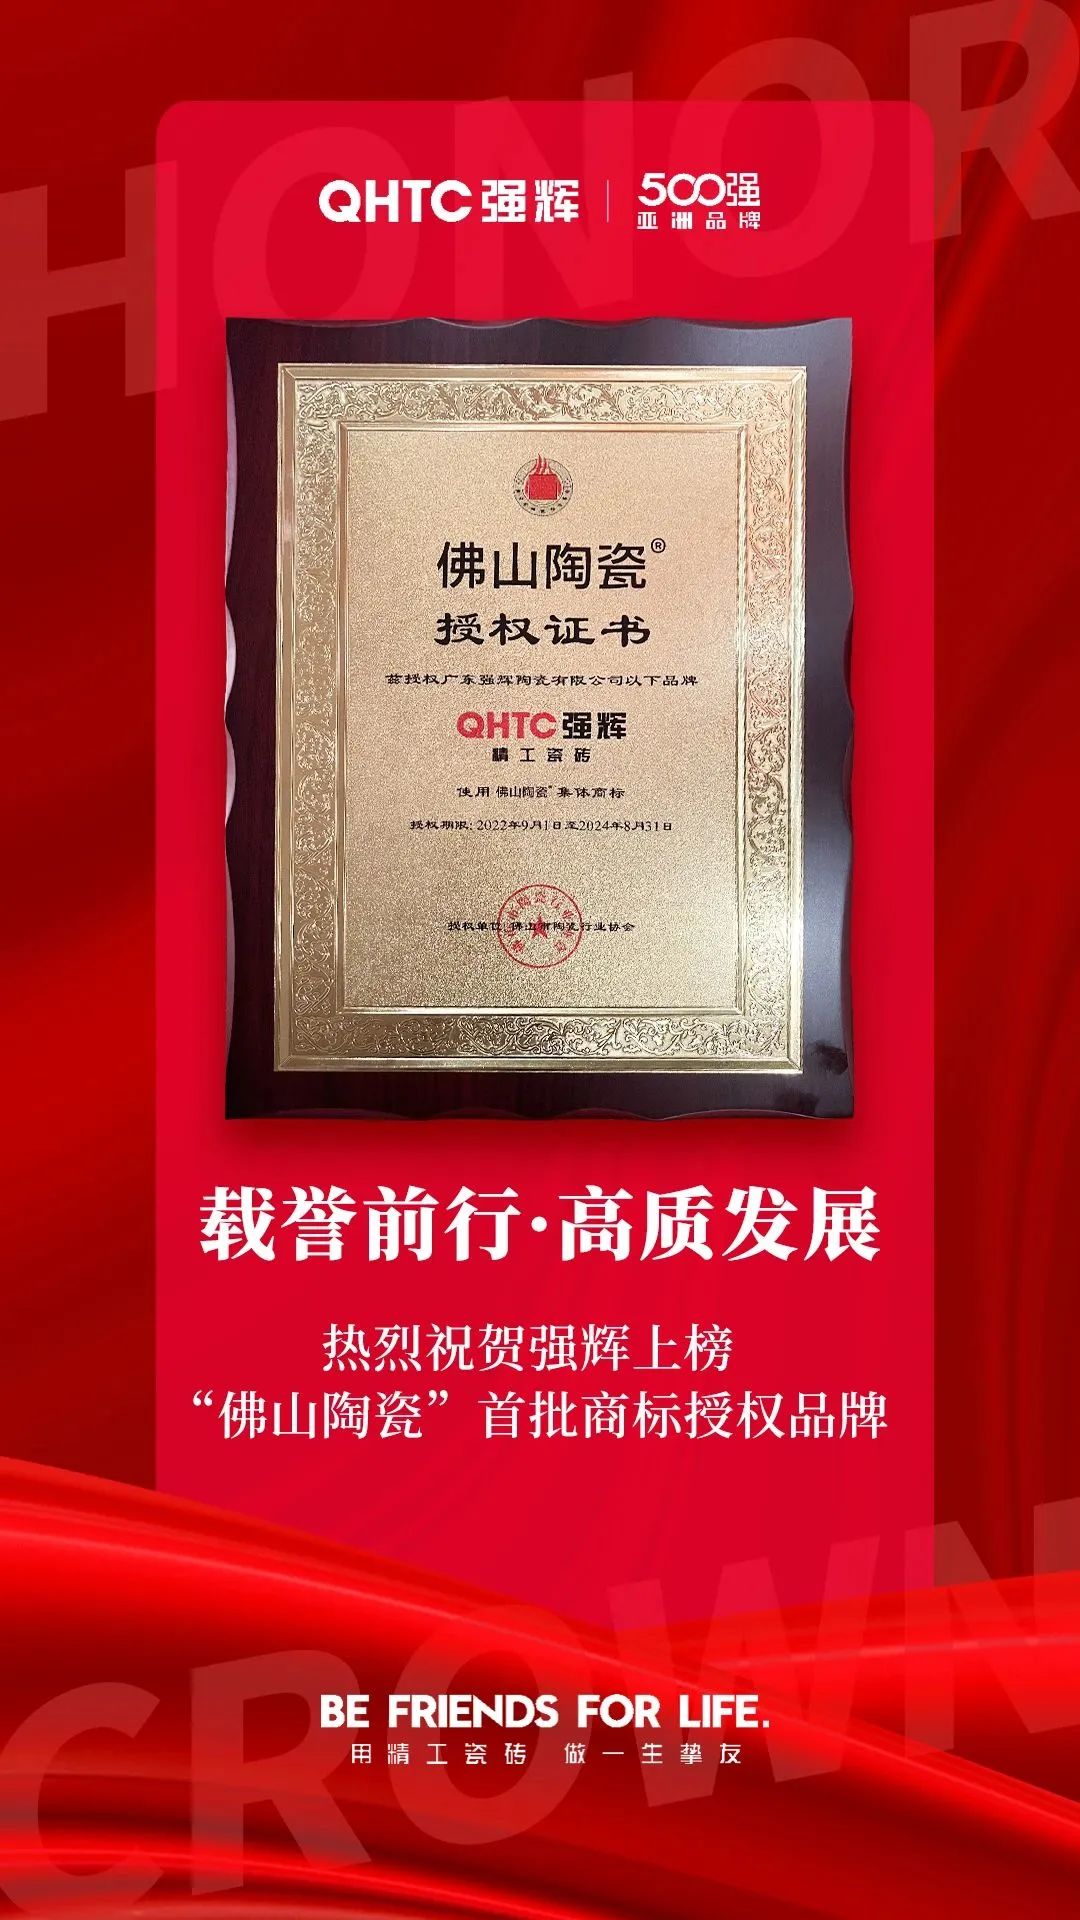 恭喜强辉上榜首批“佛山陶瓷”集体商标授权品牌！